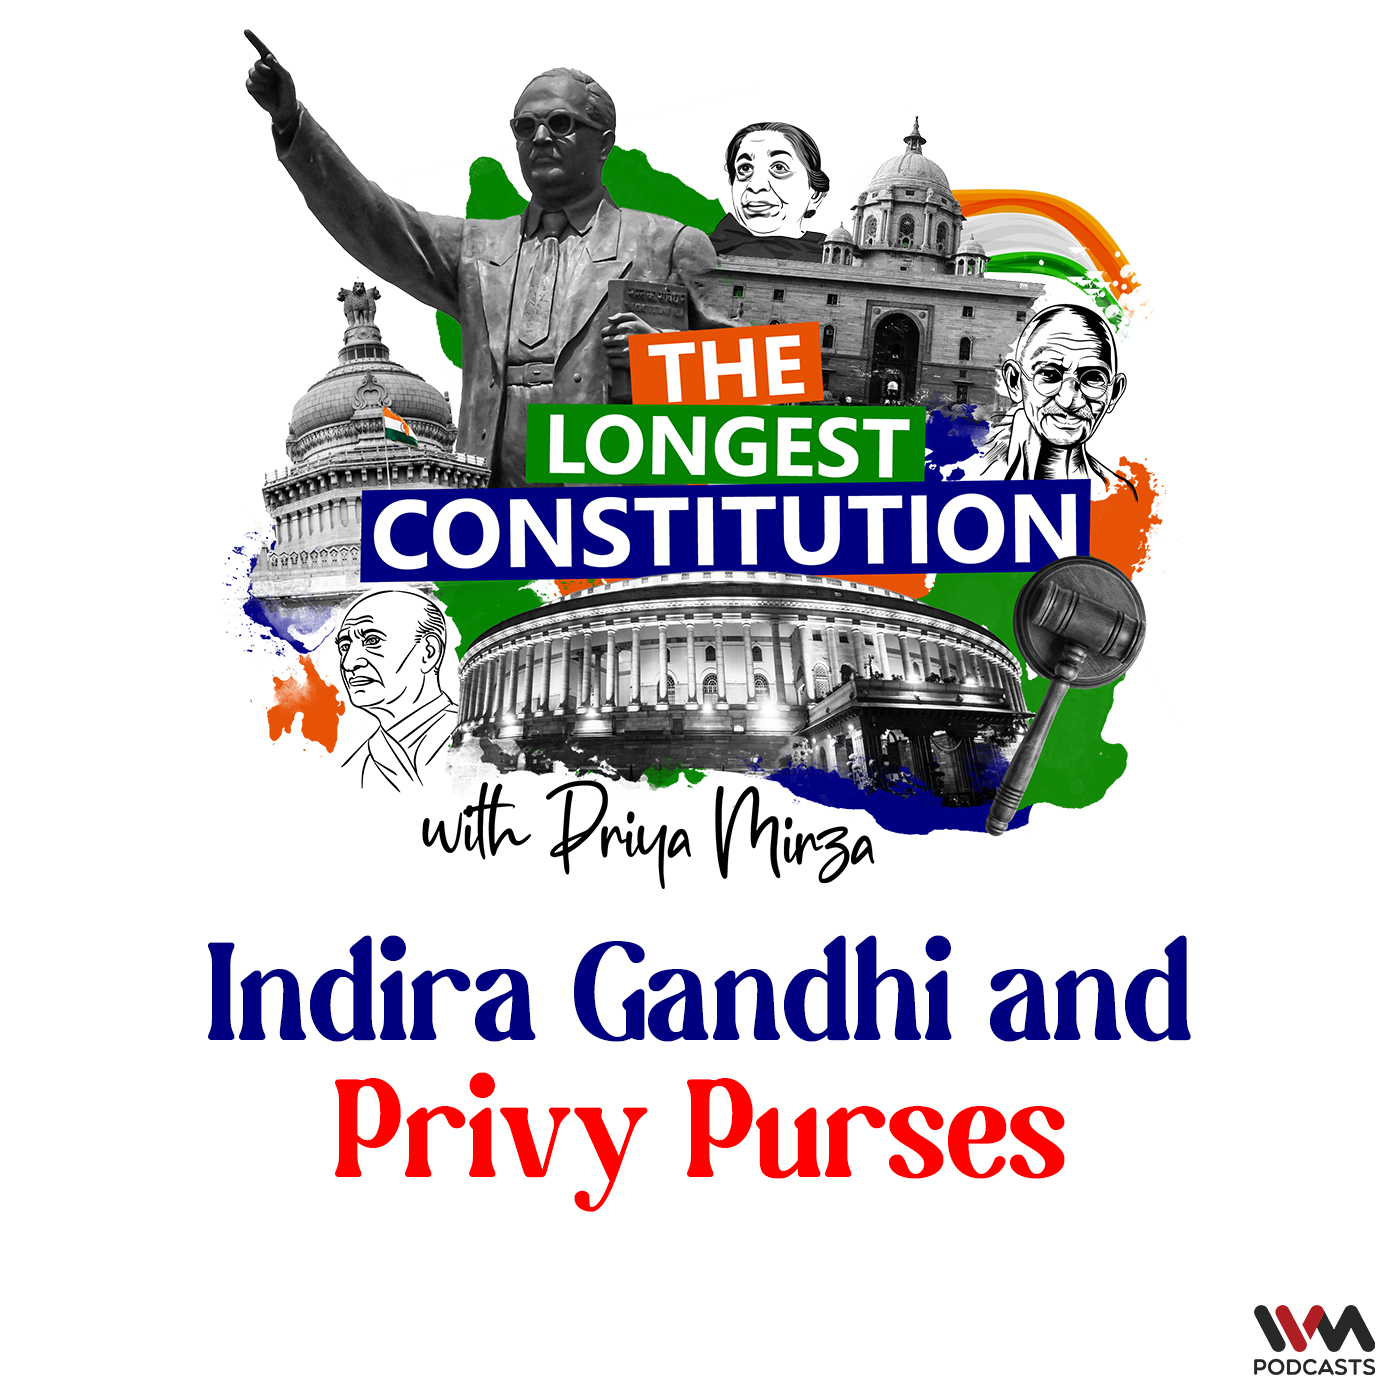 Indira Gandhi and Privy Purses